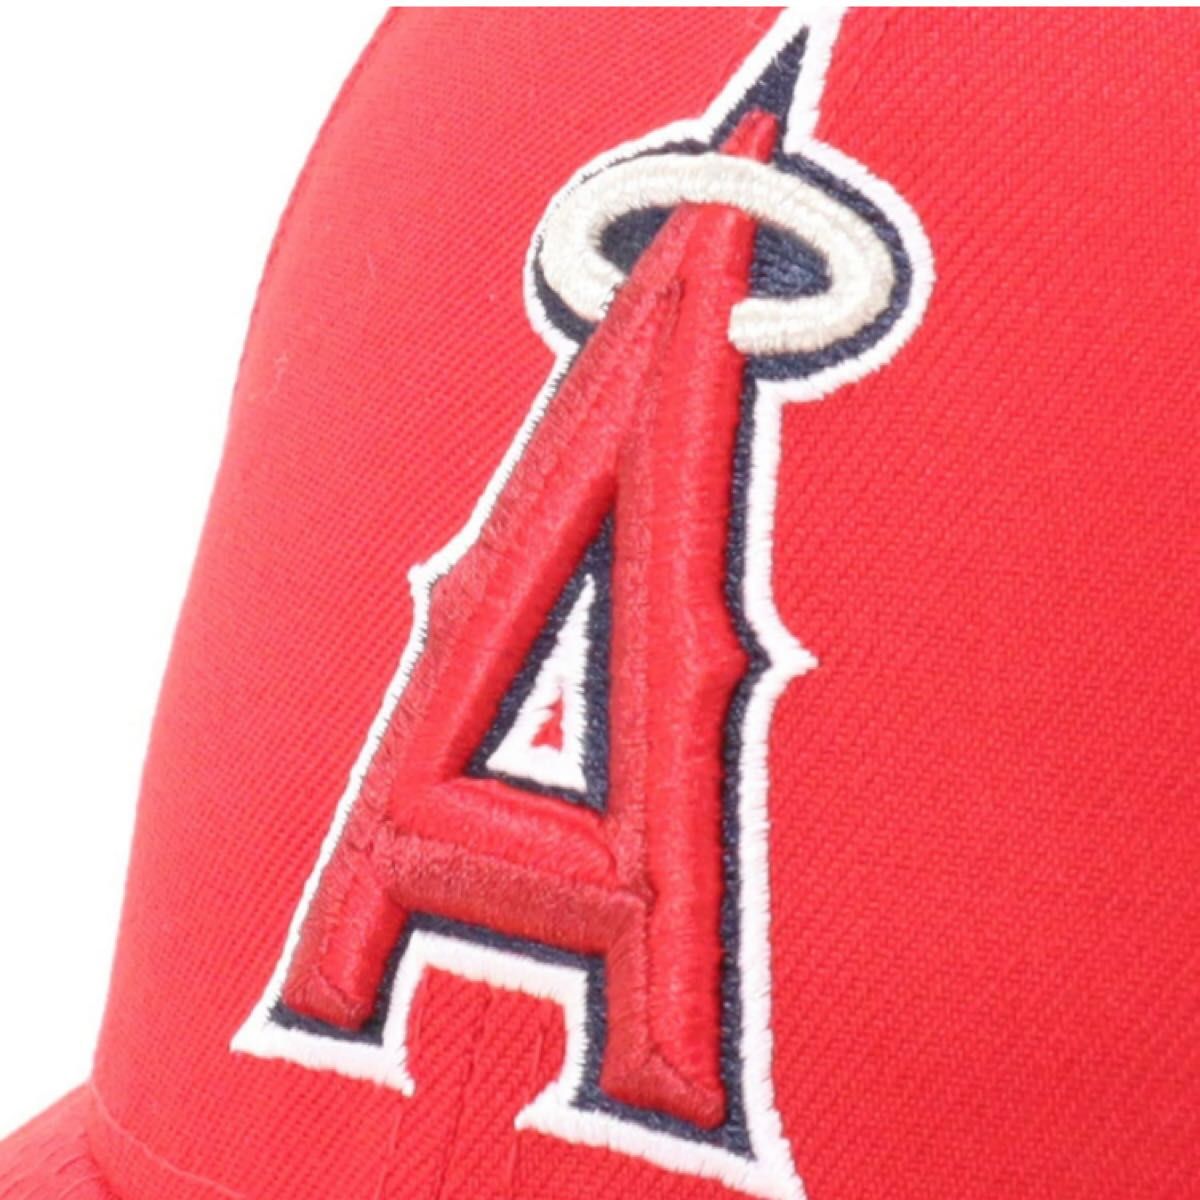 [ニューエラ] ベースボールキャップ CAP MLB 帽子 LP ACPERF 57.7cm